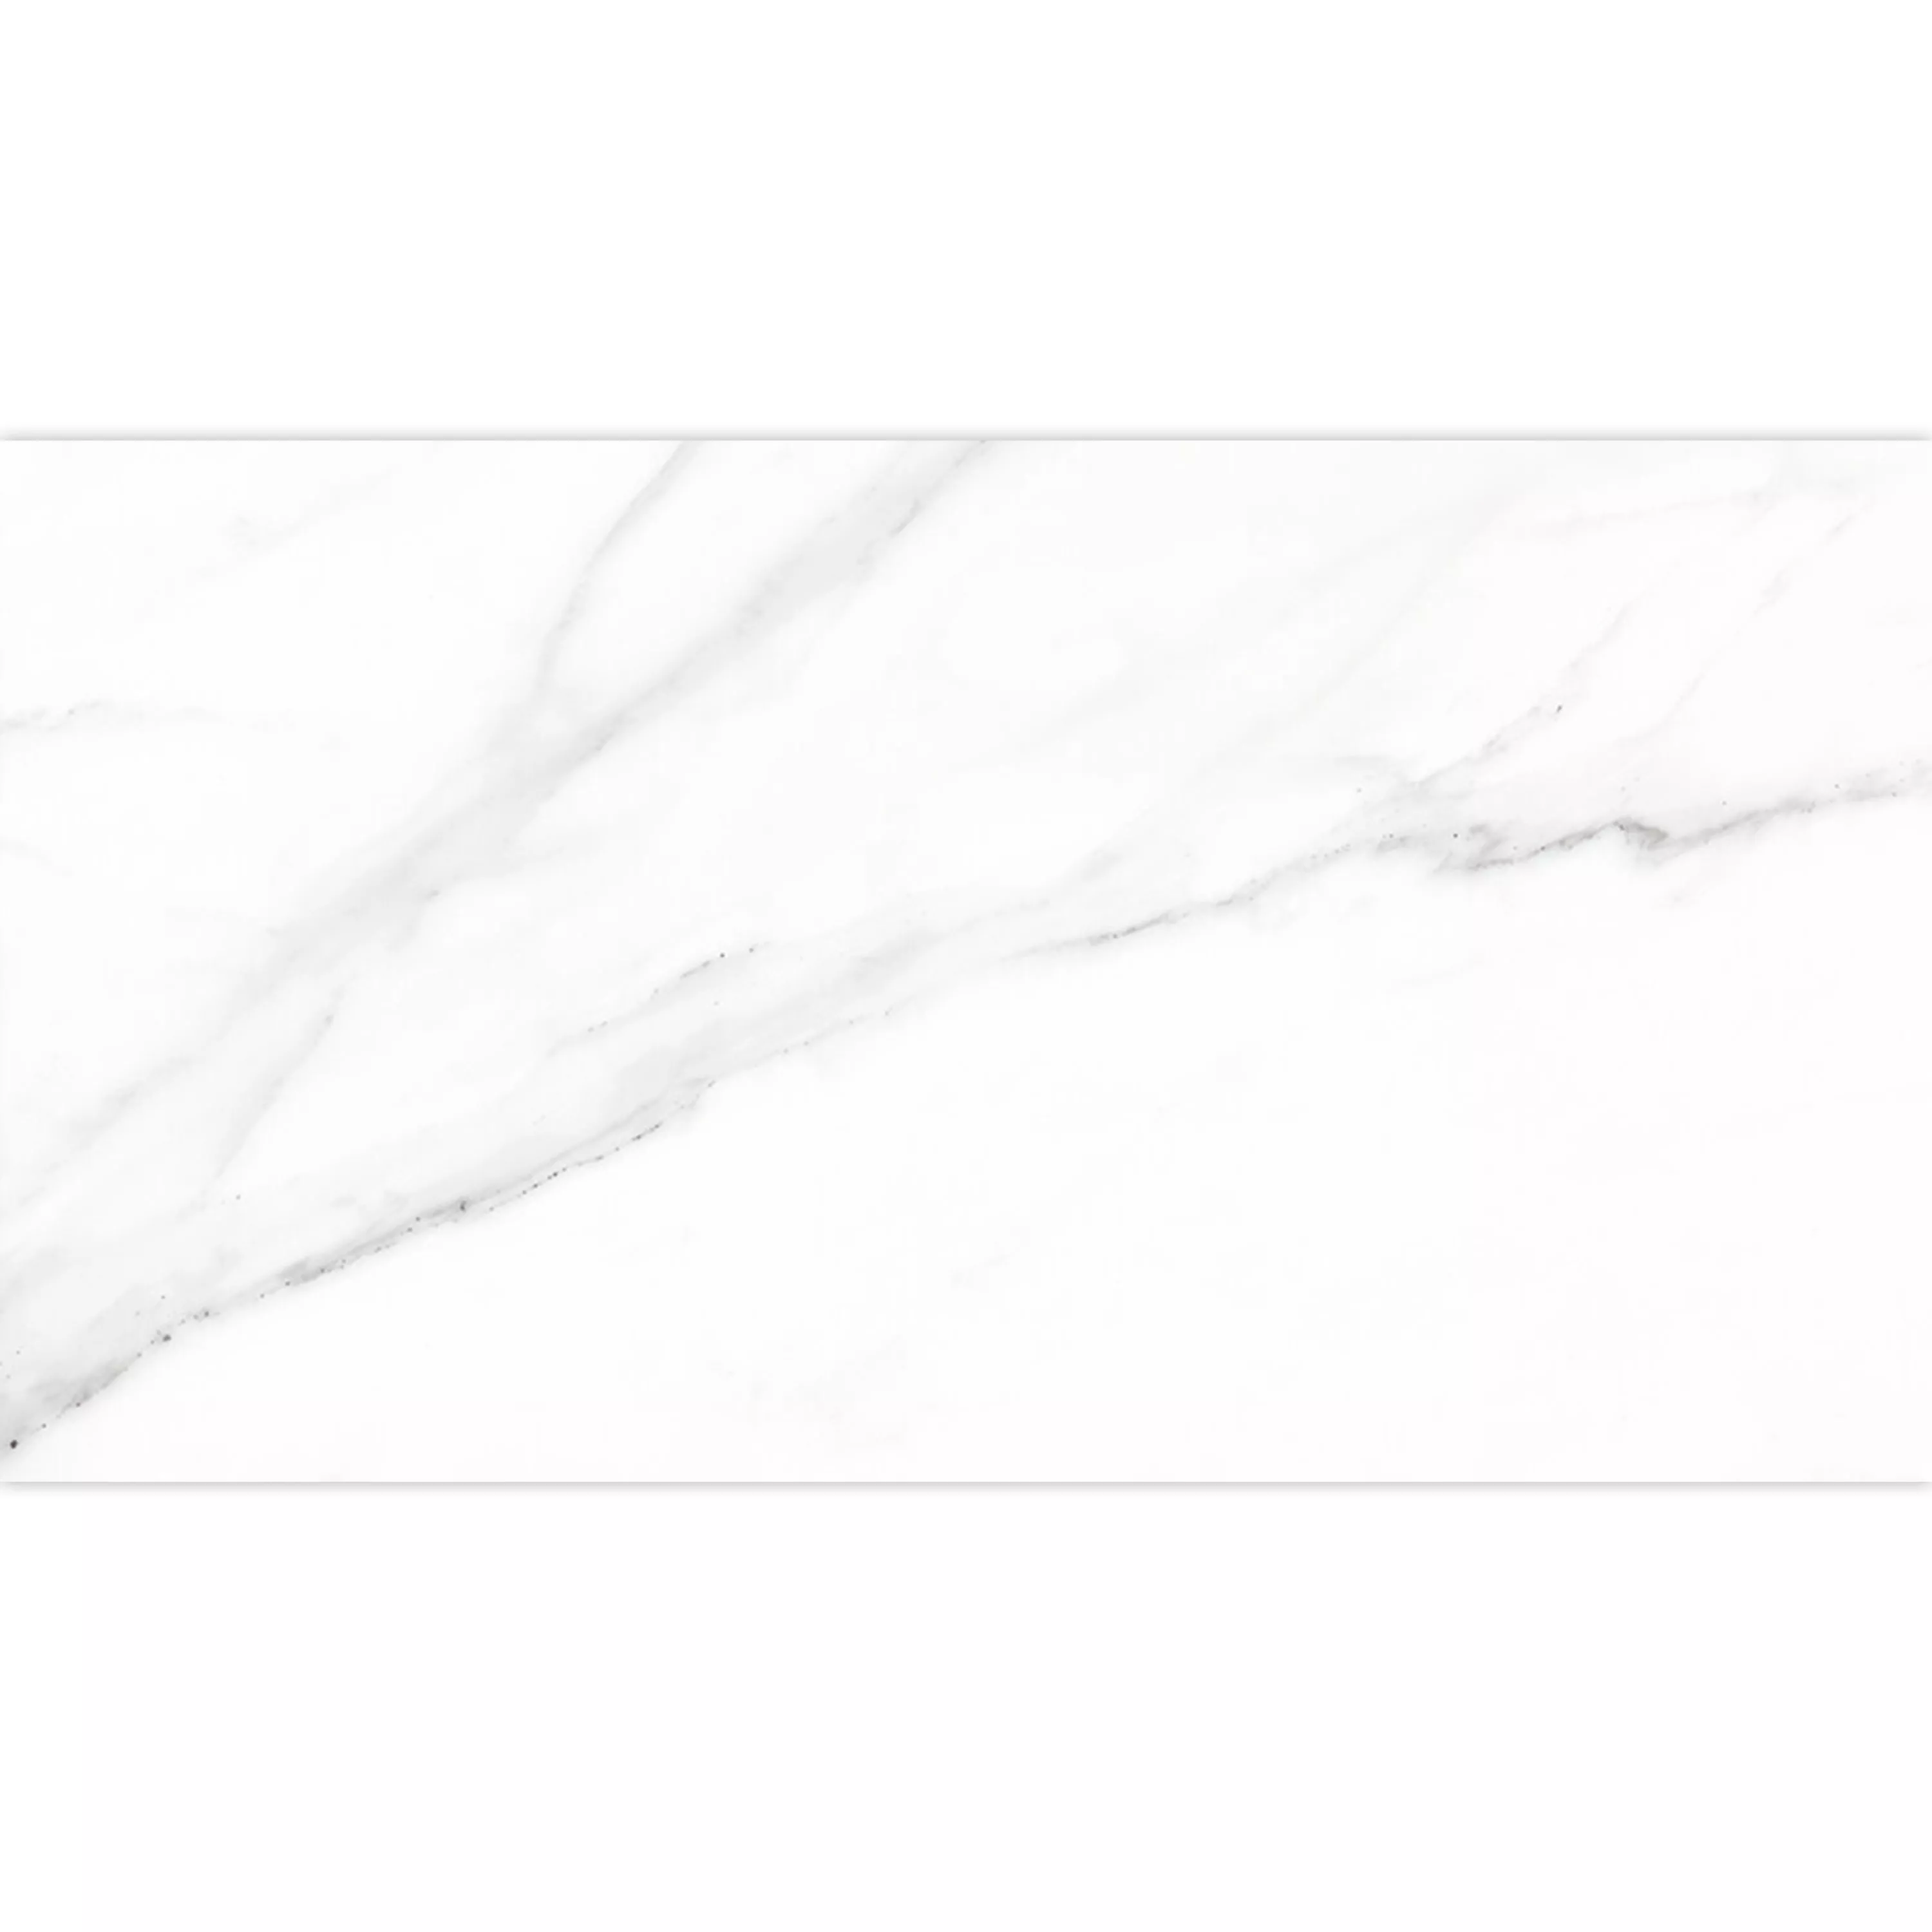 Πλακάκια Δαπέδου Arcadia Μαρμάρινη Όψη Παγωμένος Ασπρο 30x60cm